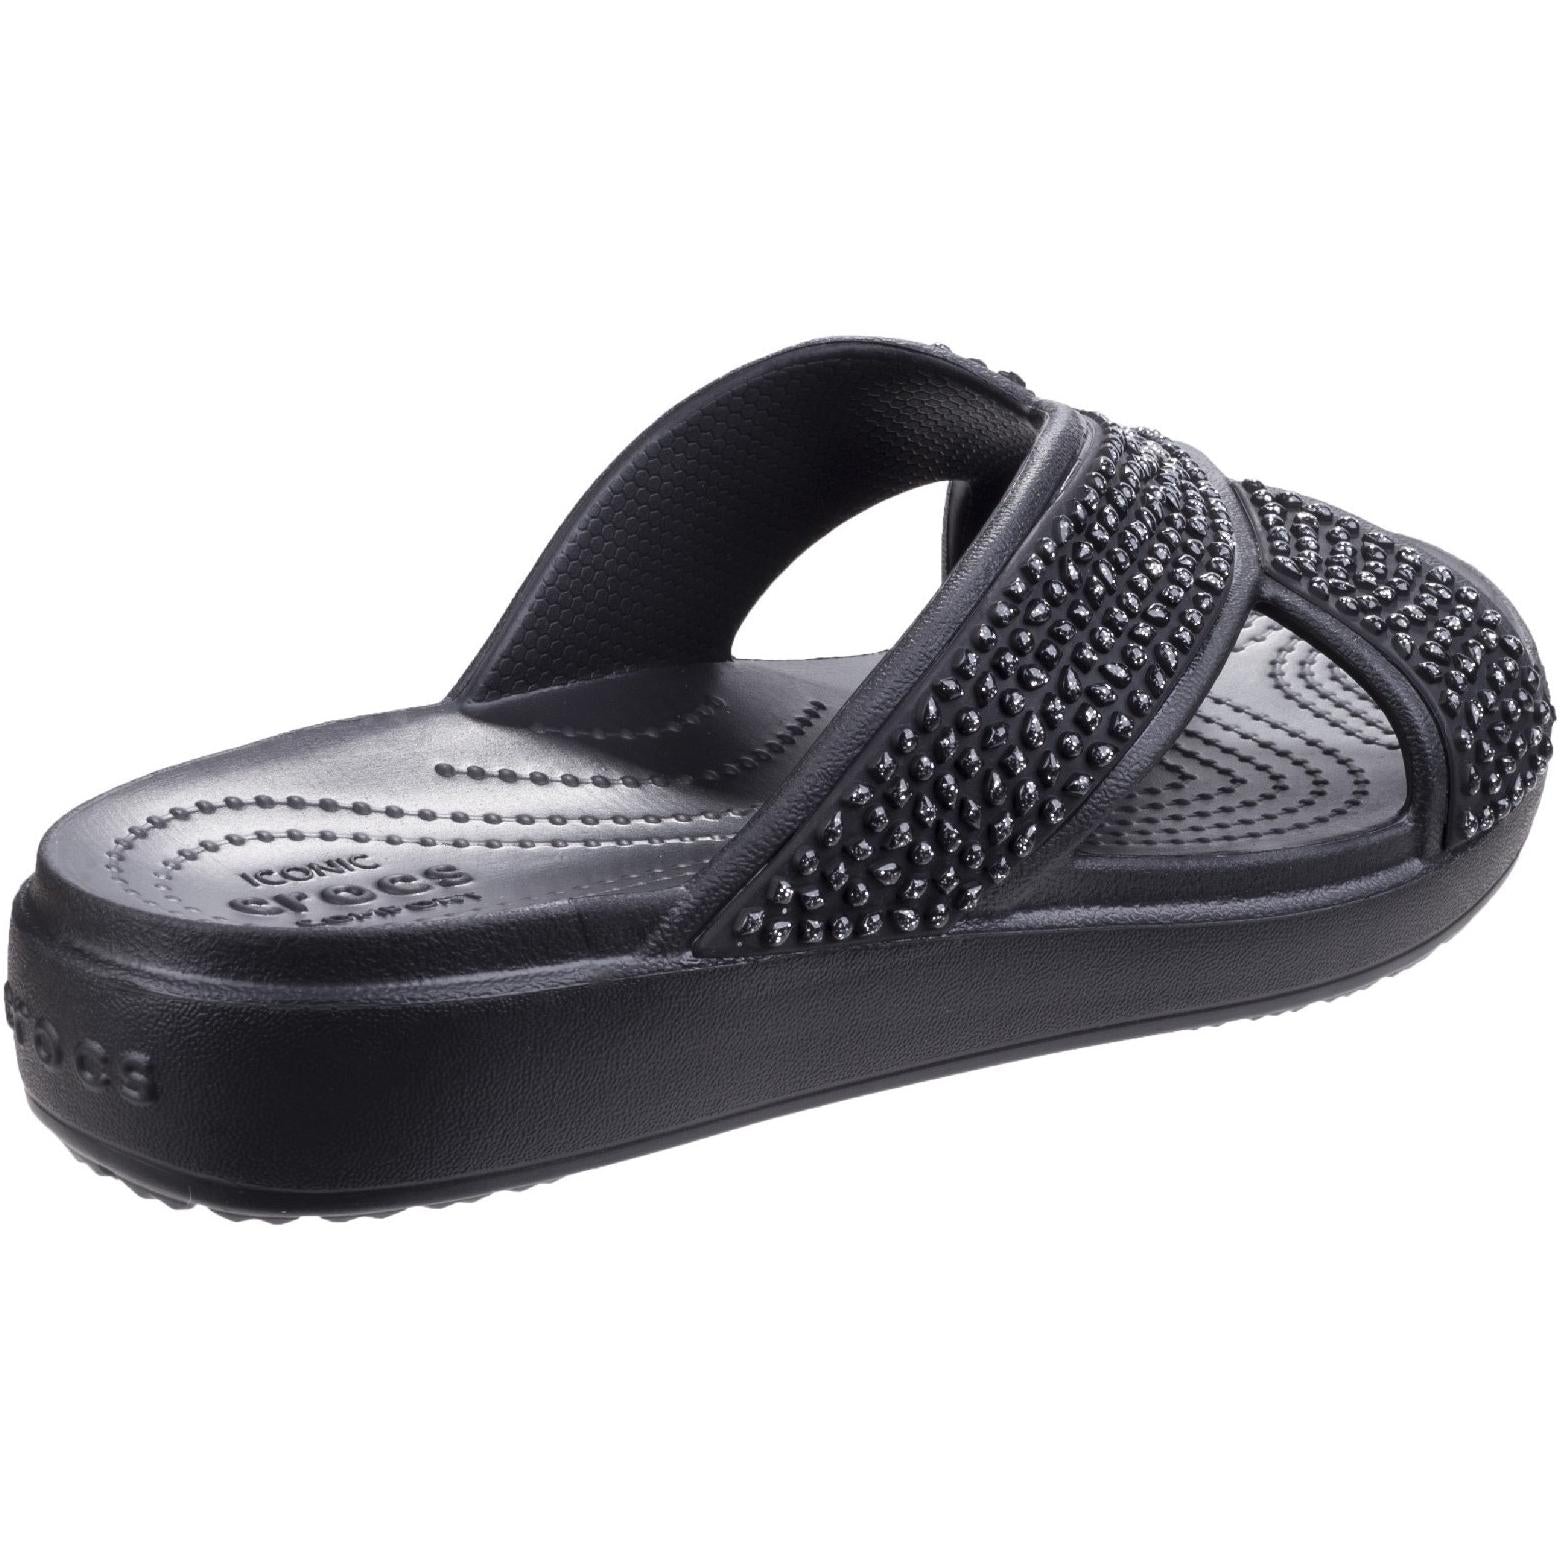 Crocs Sloane Embellished X Strap Sandals